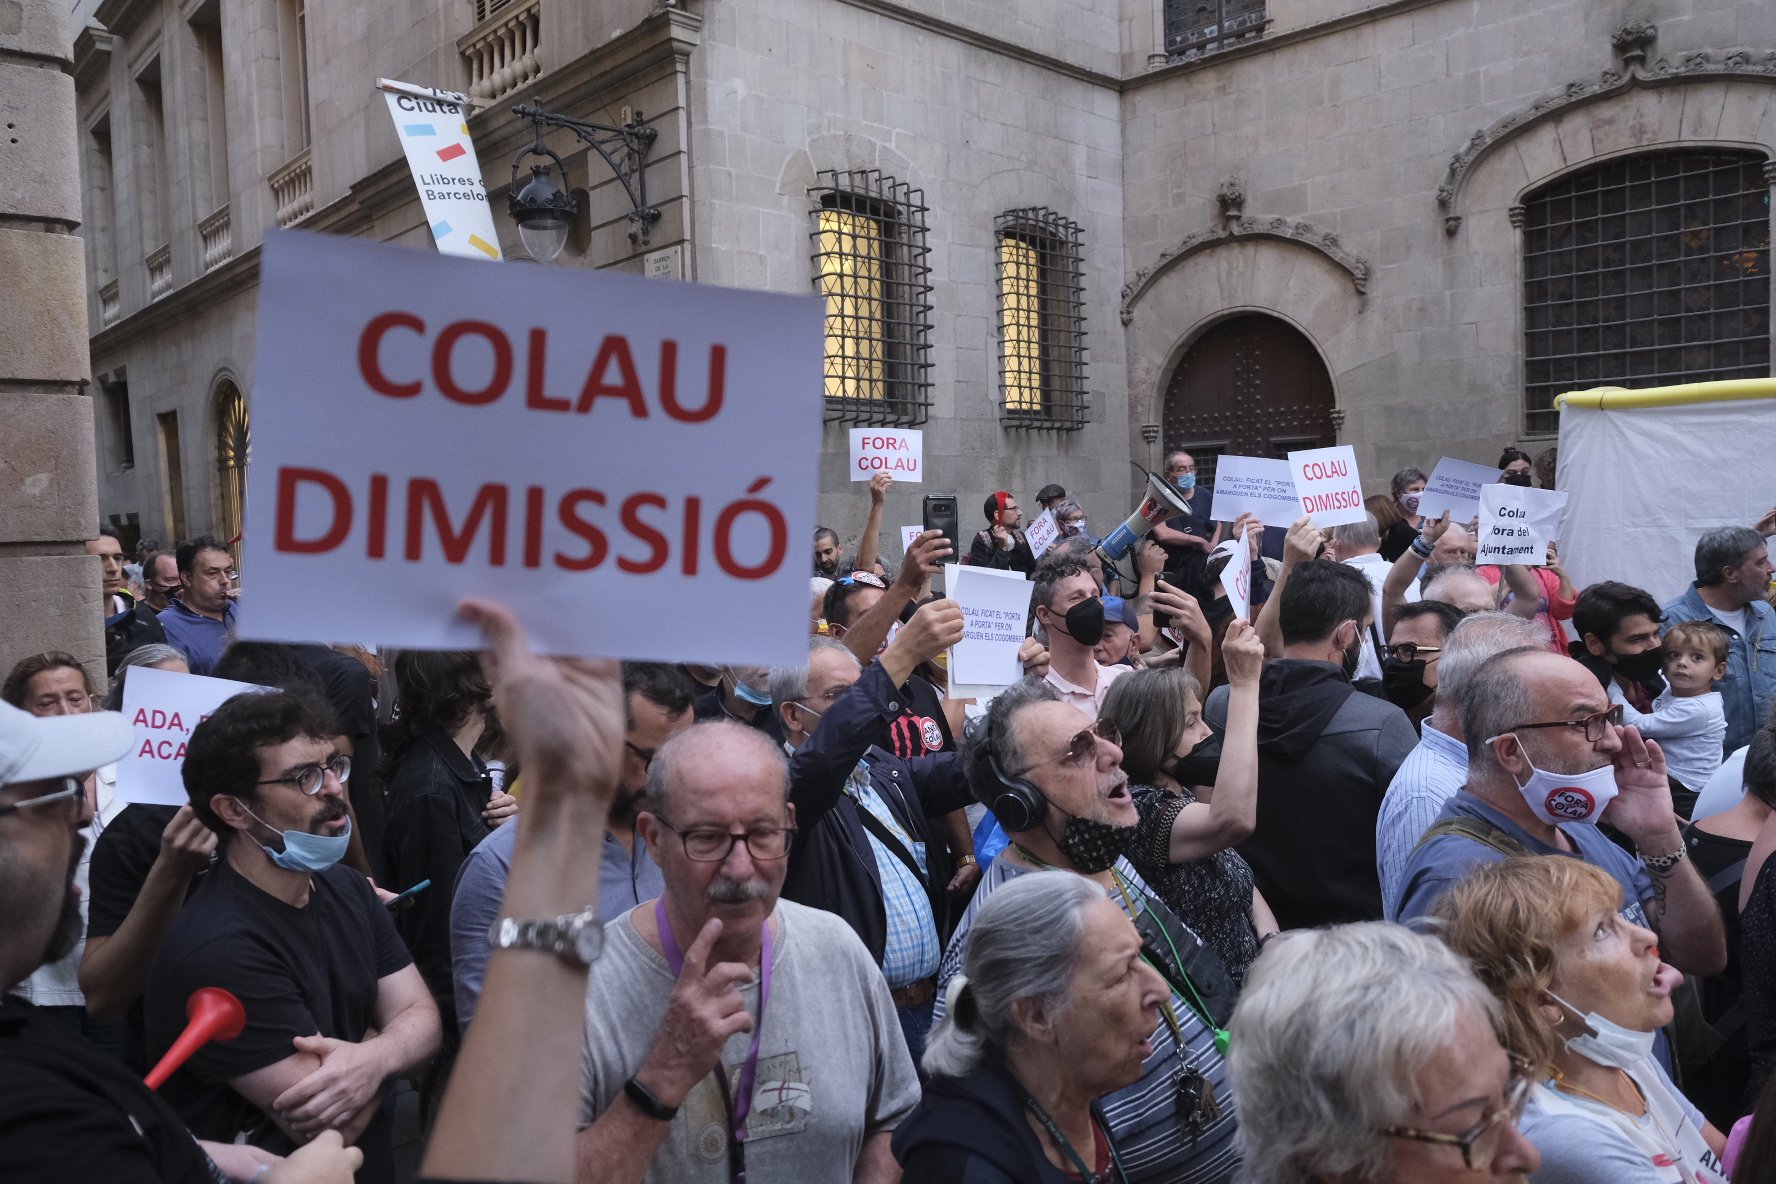 Collboni reacciona al movimiento 'Barcelona es imparable' y ofrece una reunión